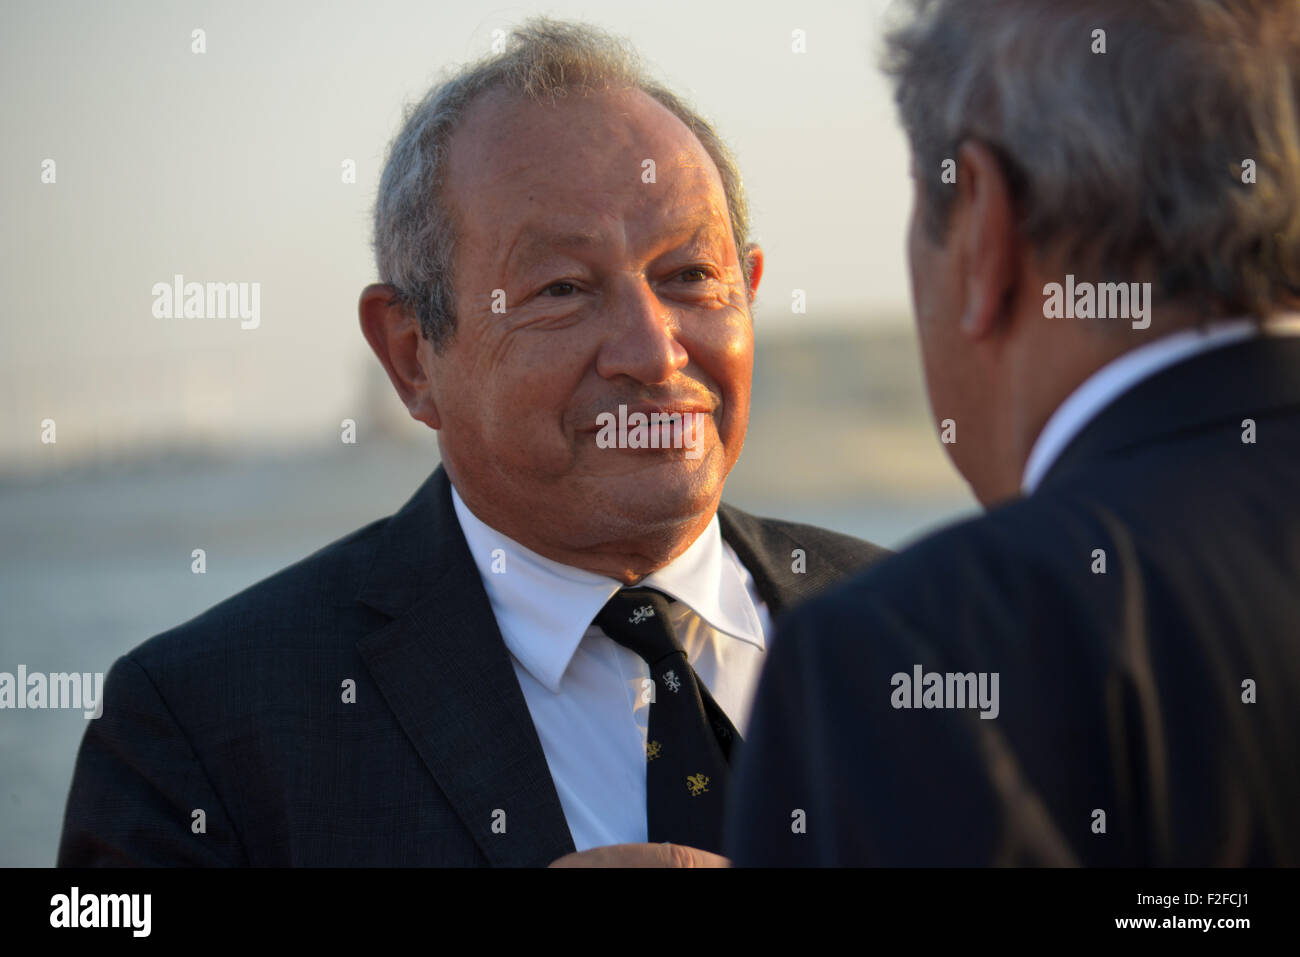 El multimillonario egipcio Naguib Sawiris en la inauguración de la ampliación del nuevo canal de Suez, duplicando la capacidad de transporte. Foto de stock